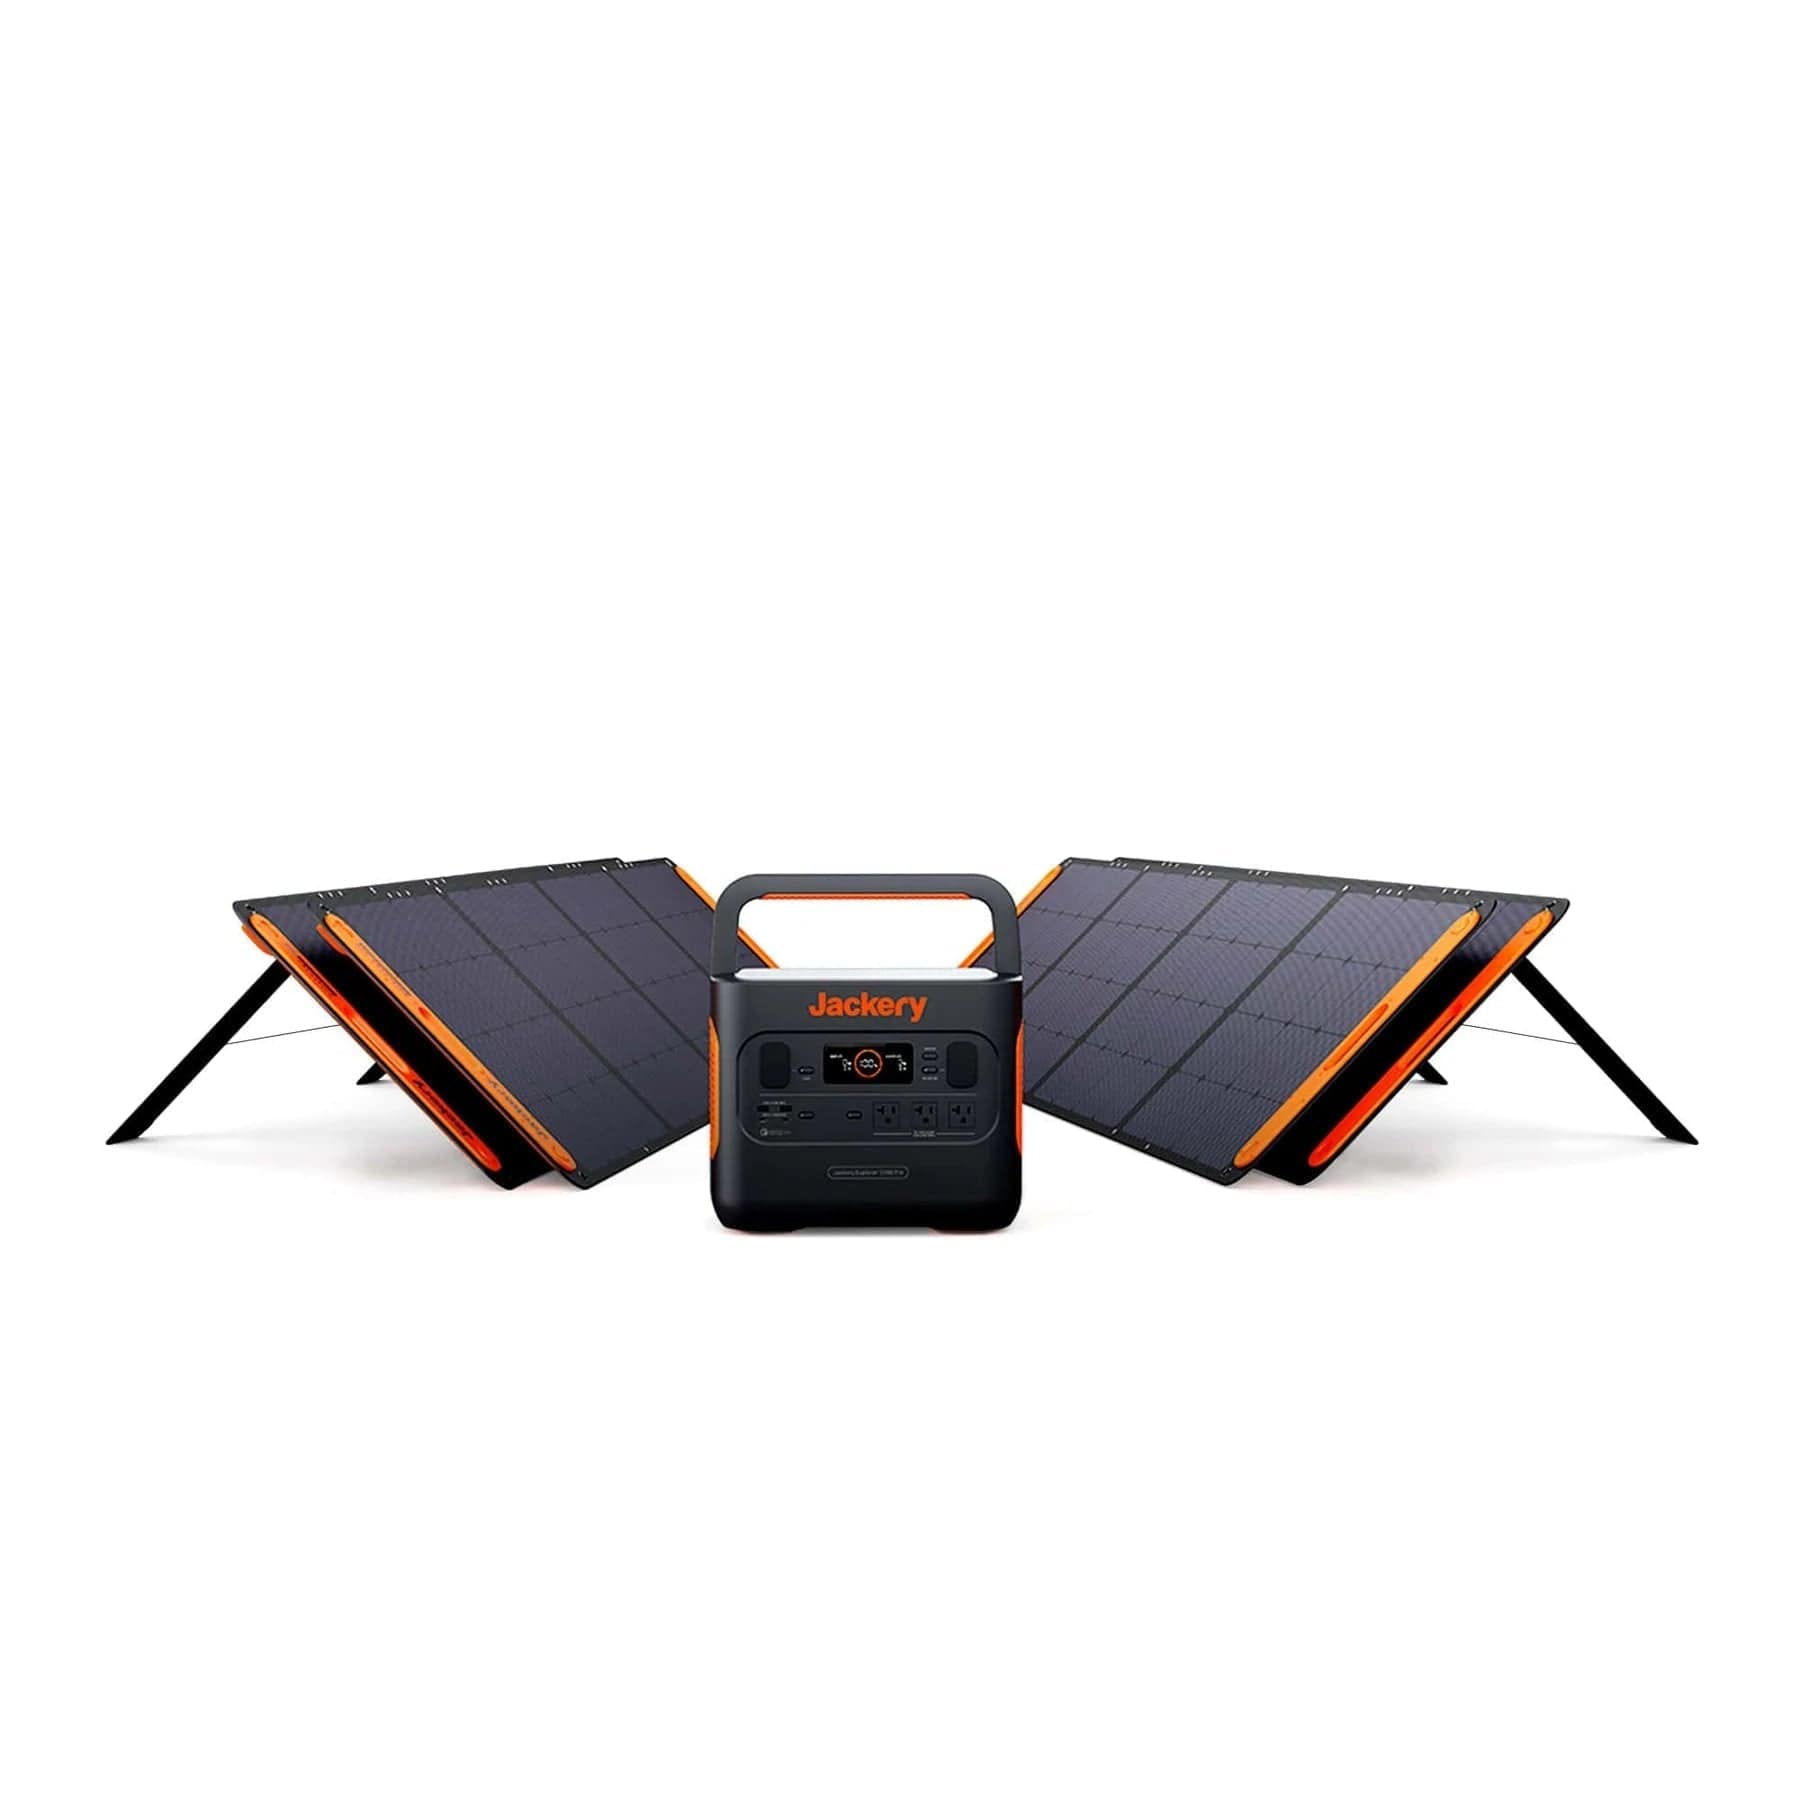 Jackery 2000 Pro_4SS200 + 4x SolarSaga 200W Solar Panel Solar Generator Kit